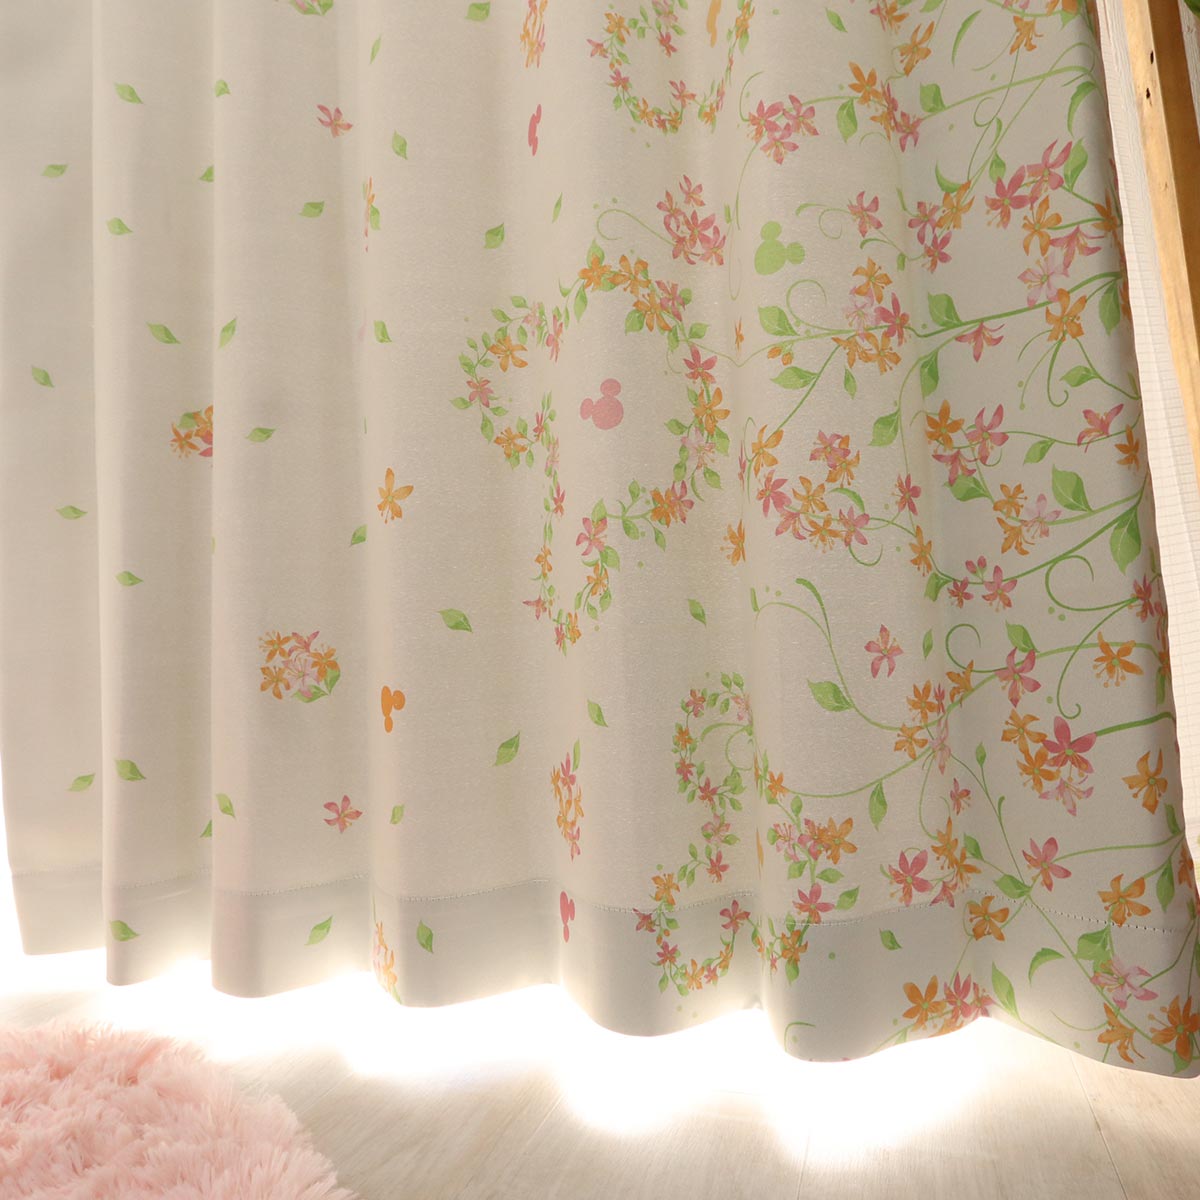 ２枚組カーテン 可愛いらしいディズニー花柄デザインカーテン ミッキーフラワーリーフ ピンク ラグ カーペット通販 びっくりカーペット